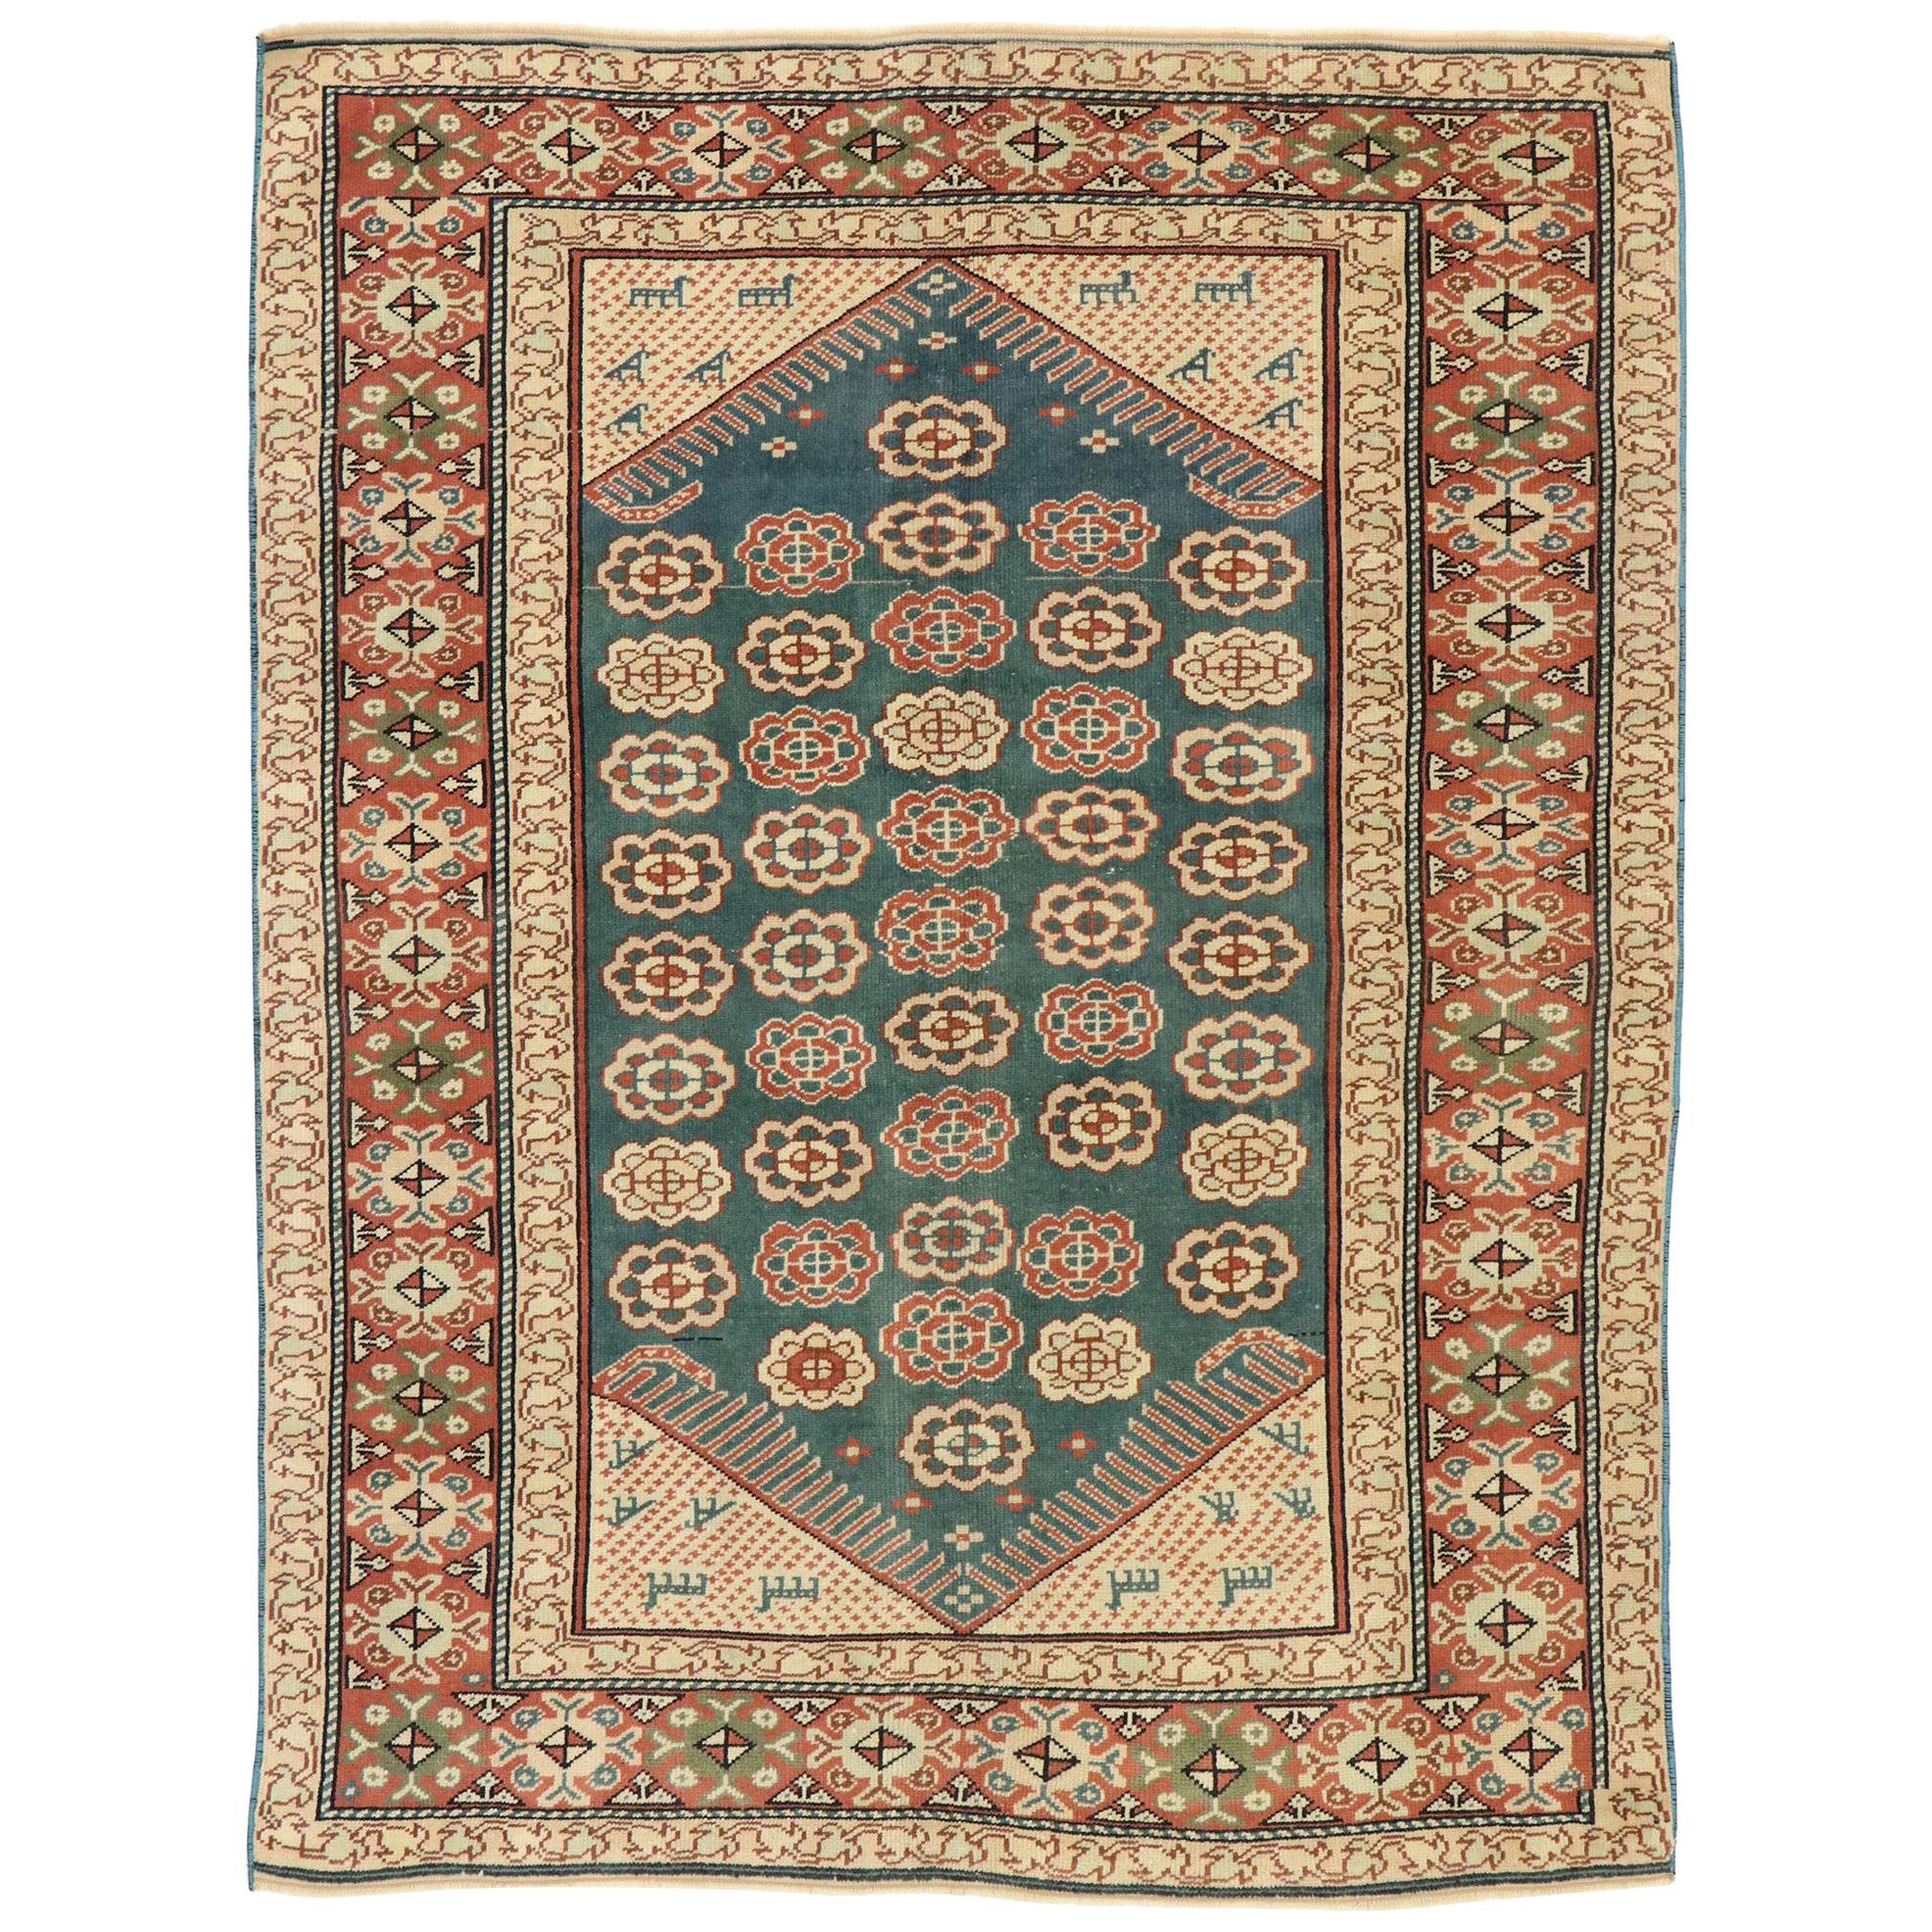 Ancien tapis turc d'Oushak de style colonial américain